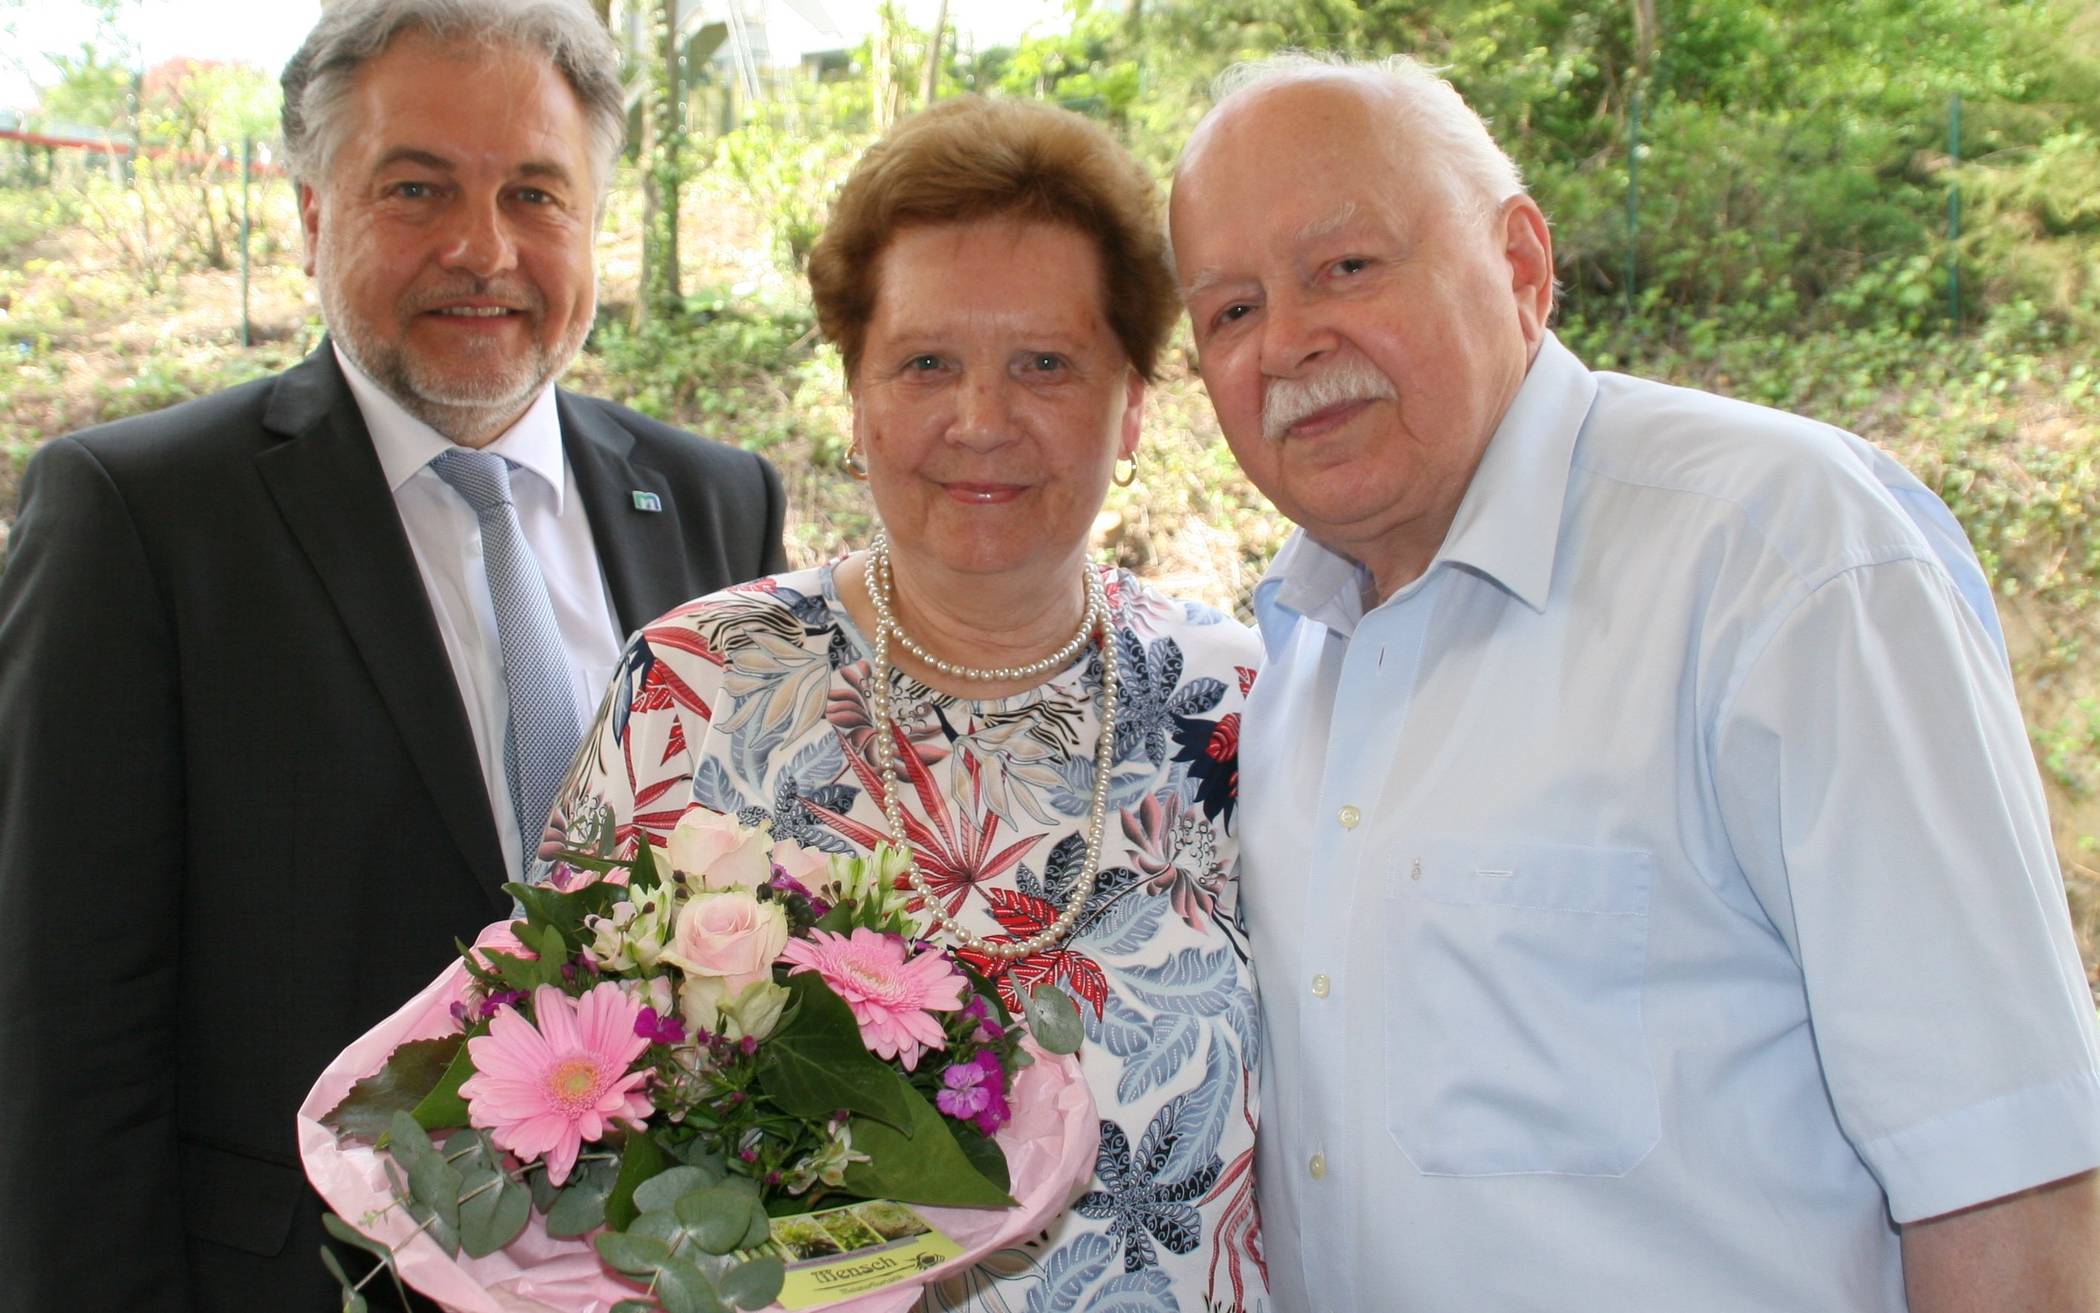  Jubiläumsbild mit Bürgermeister: Thomas Dinkelmann gratulierte natürlich auch Dorota und Anton Gadomski zur Diamantenen Hochzeit.    